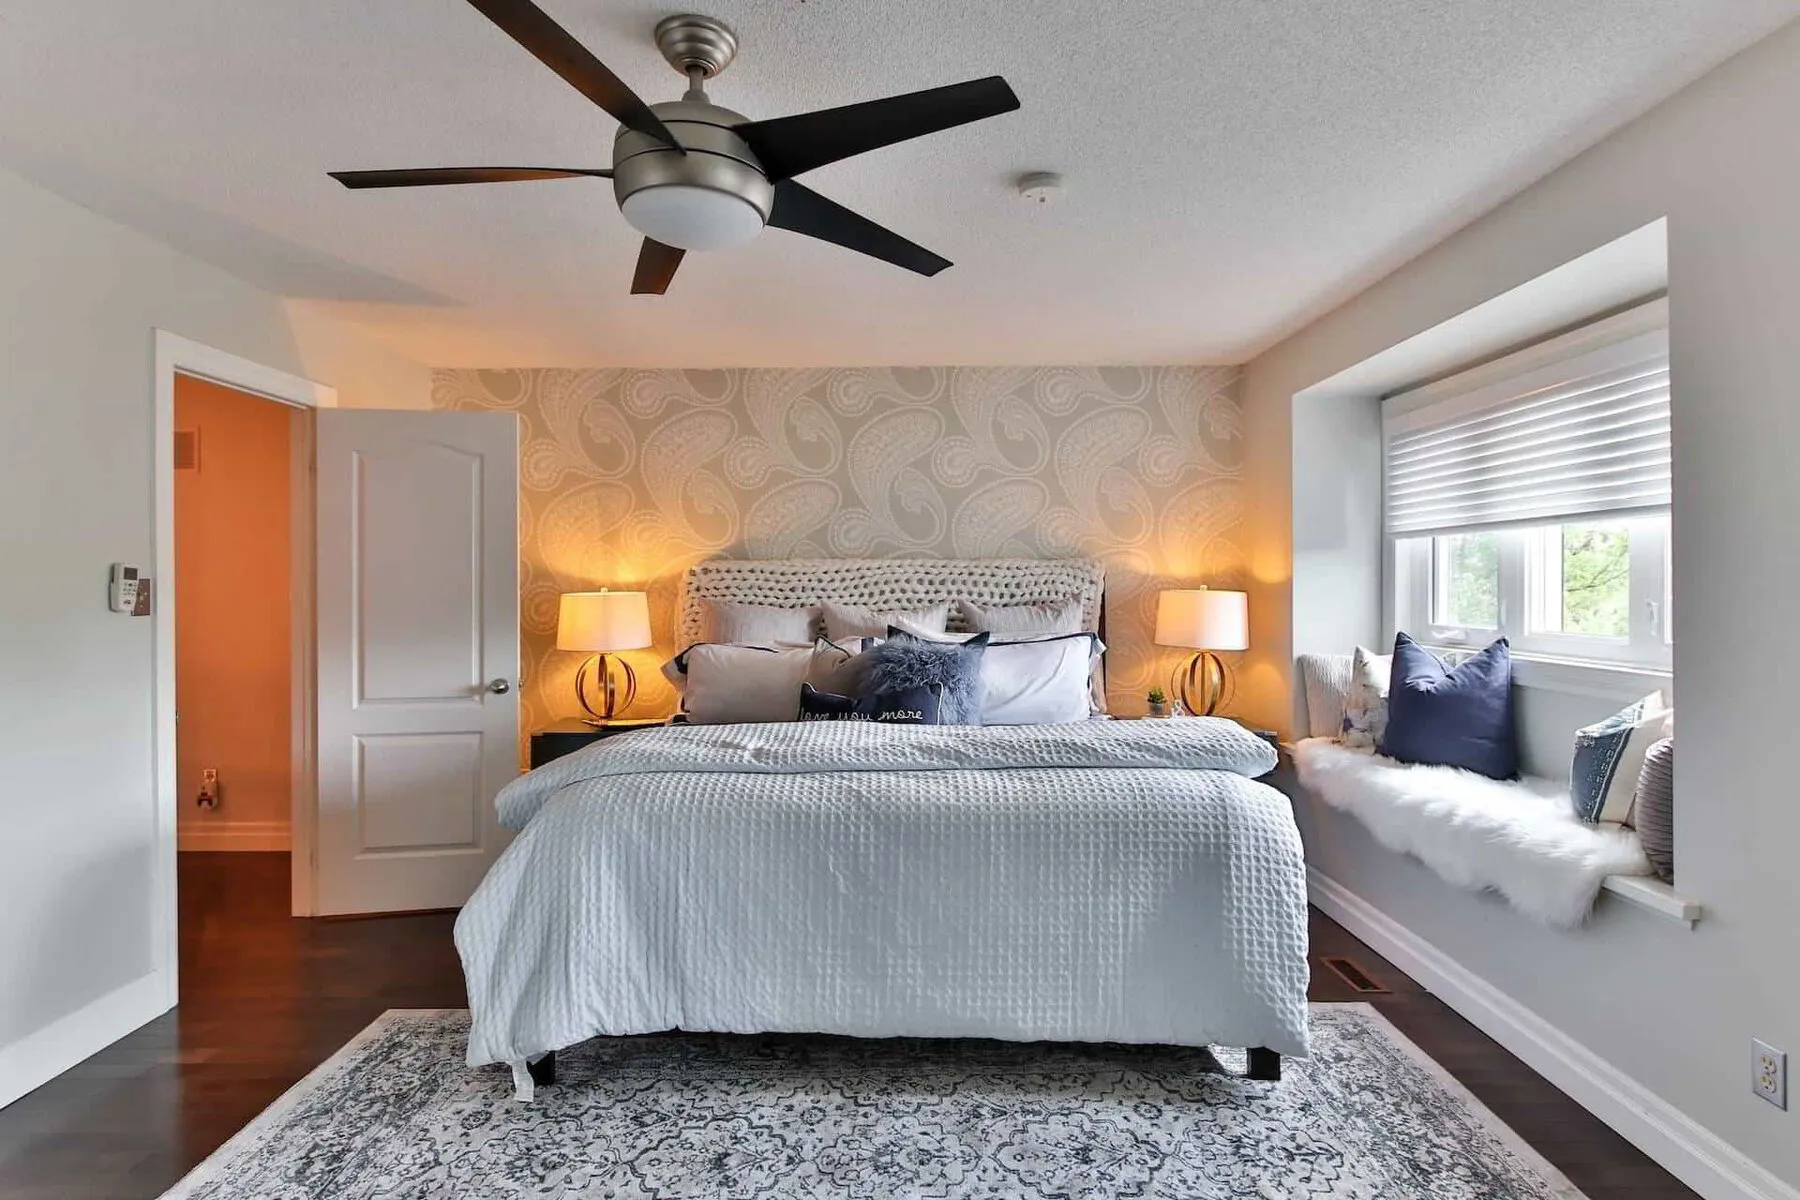 ceiling fan in a modern bedroom